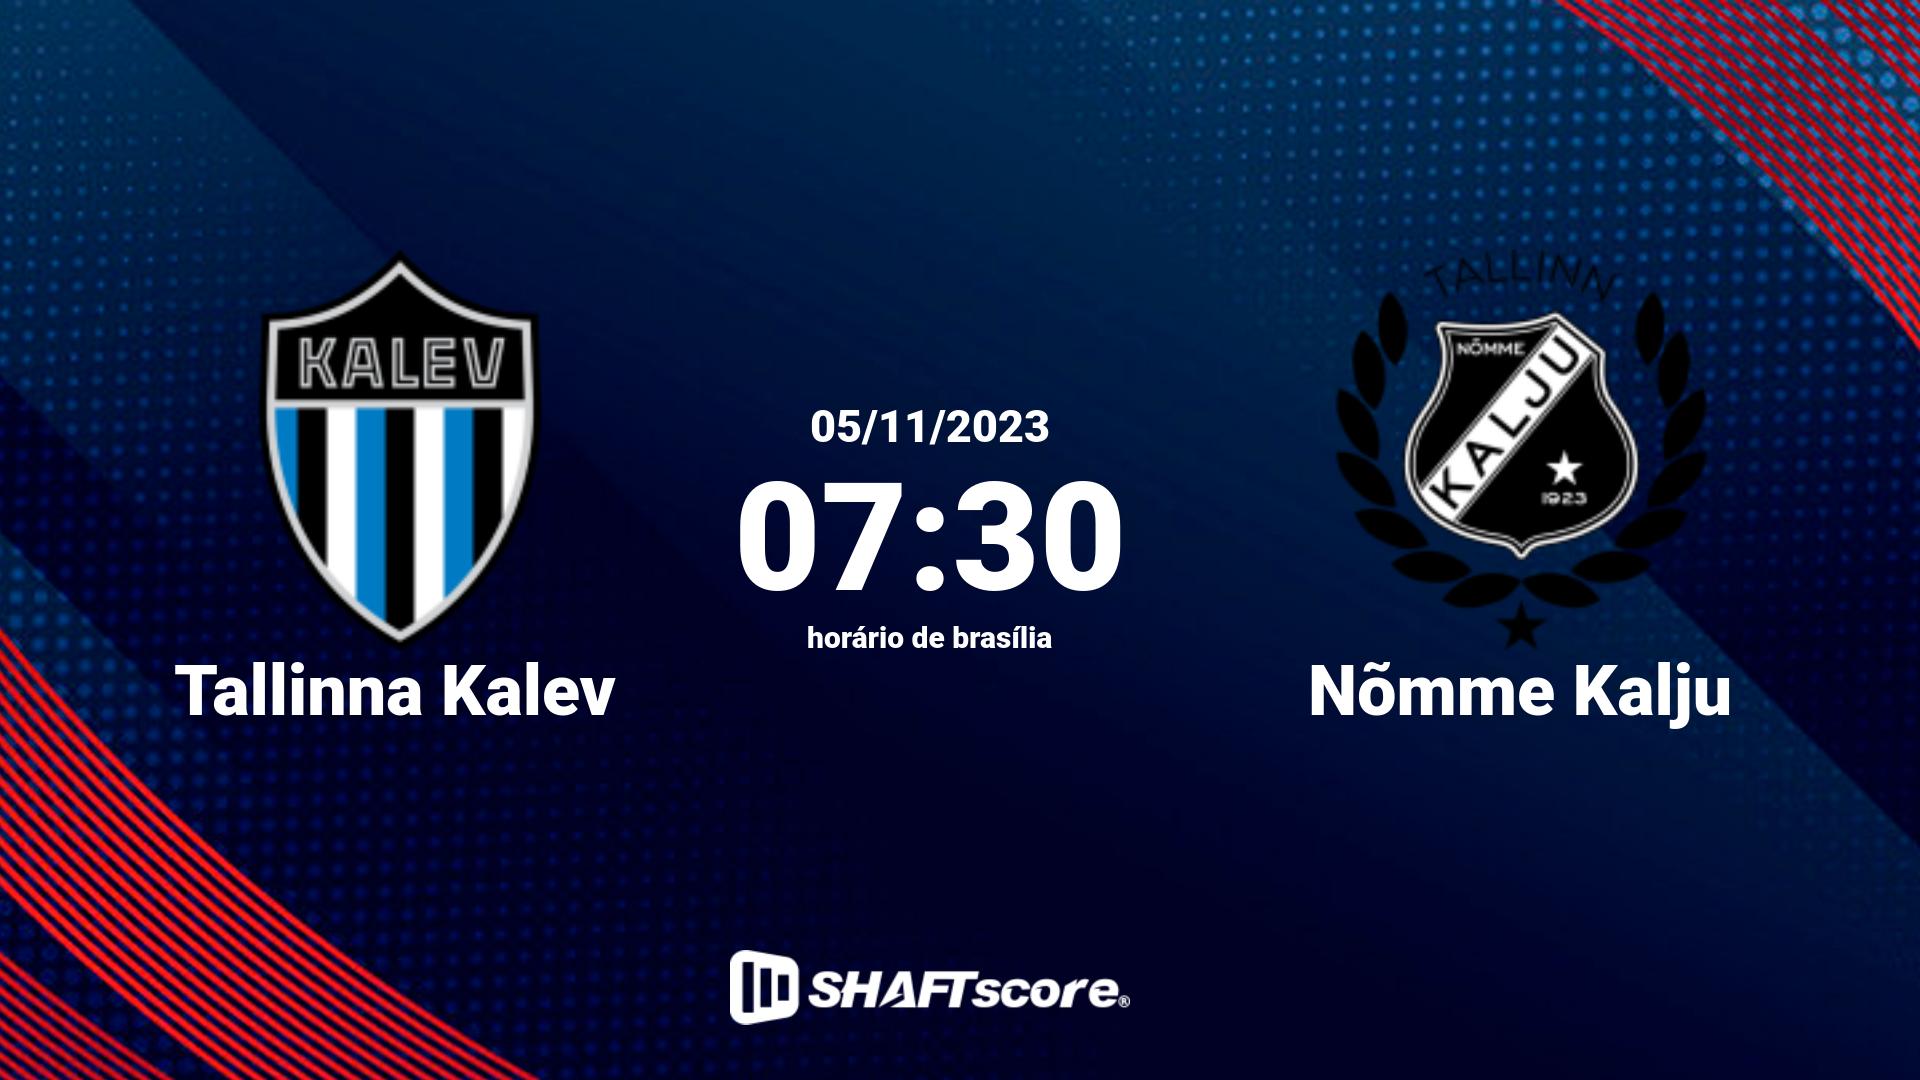 Estatísticas do jogo Tallinna Kalev vs Nõmme Kalju 05.11 07:30